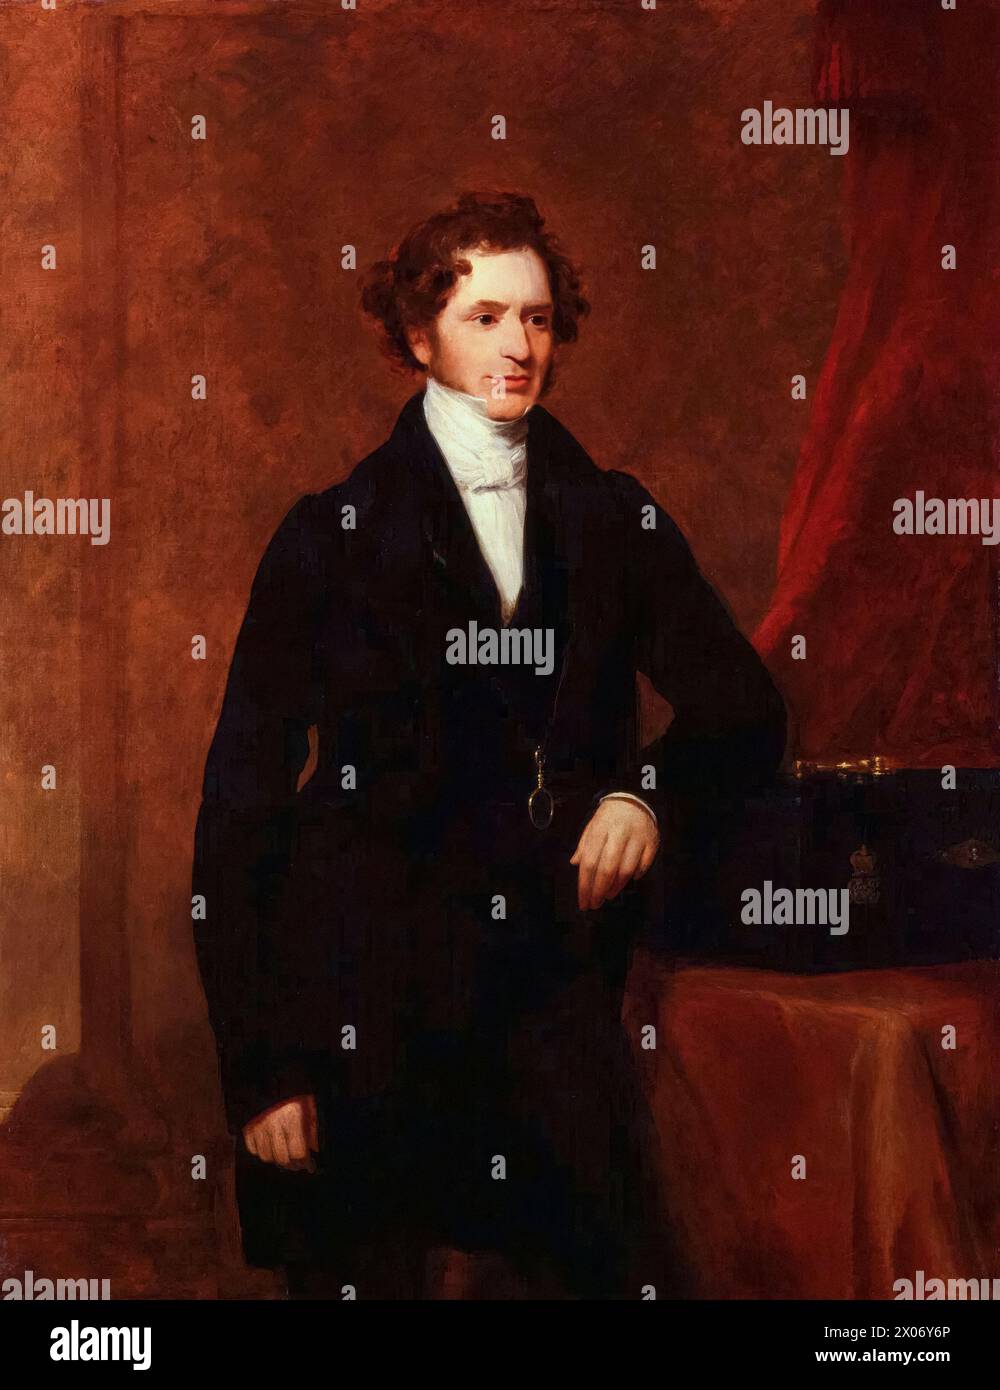 Edward Smith-Stanley, 14e comte de Derby (1799-1869), connu sous le nom de «Lord Stanley», a servi trois fois comme premier ministre du Royaume-Uni 1852, 1858-1859, et 1866-1868, portrait peint à l'huile sur toile par Frederick Richard Say, 1844 Banque D'Images